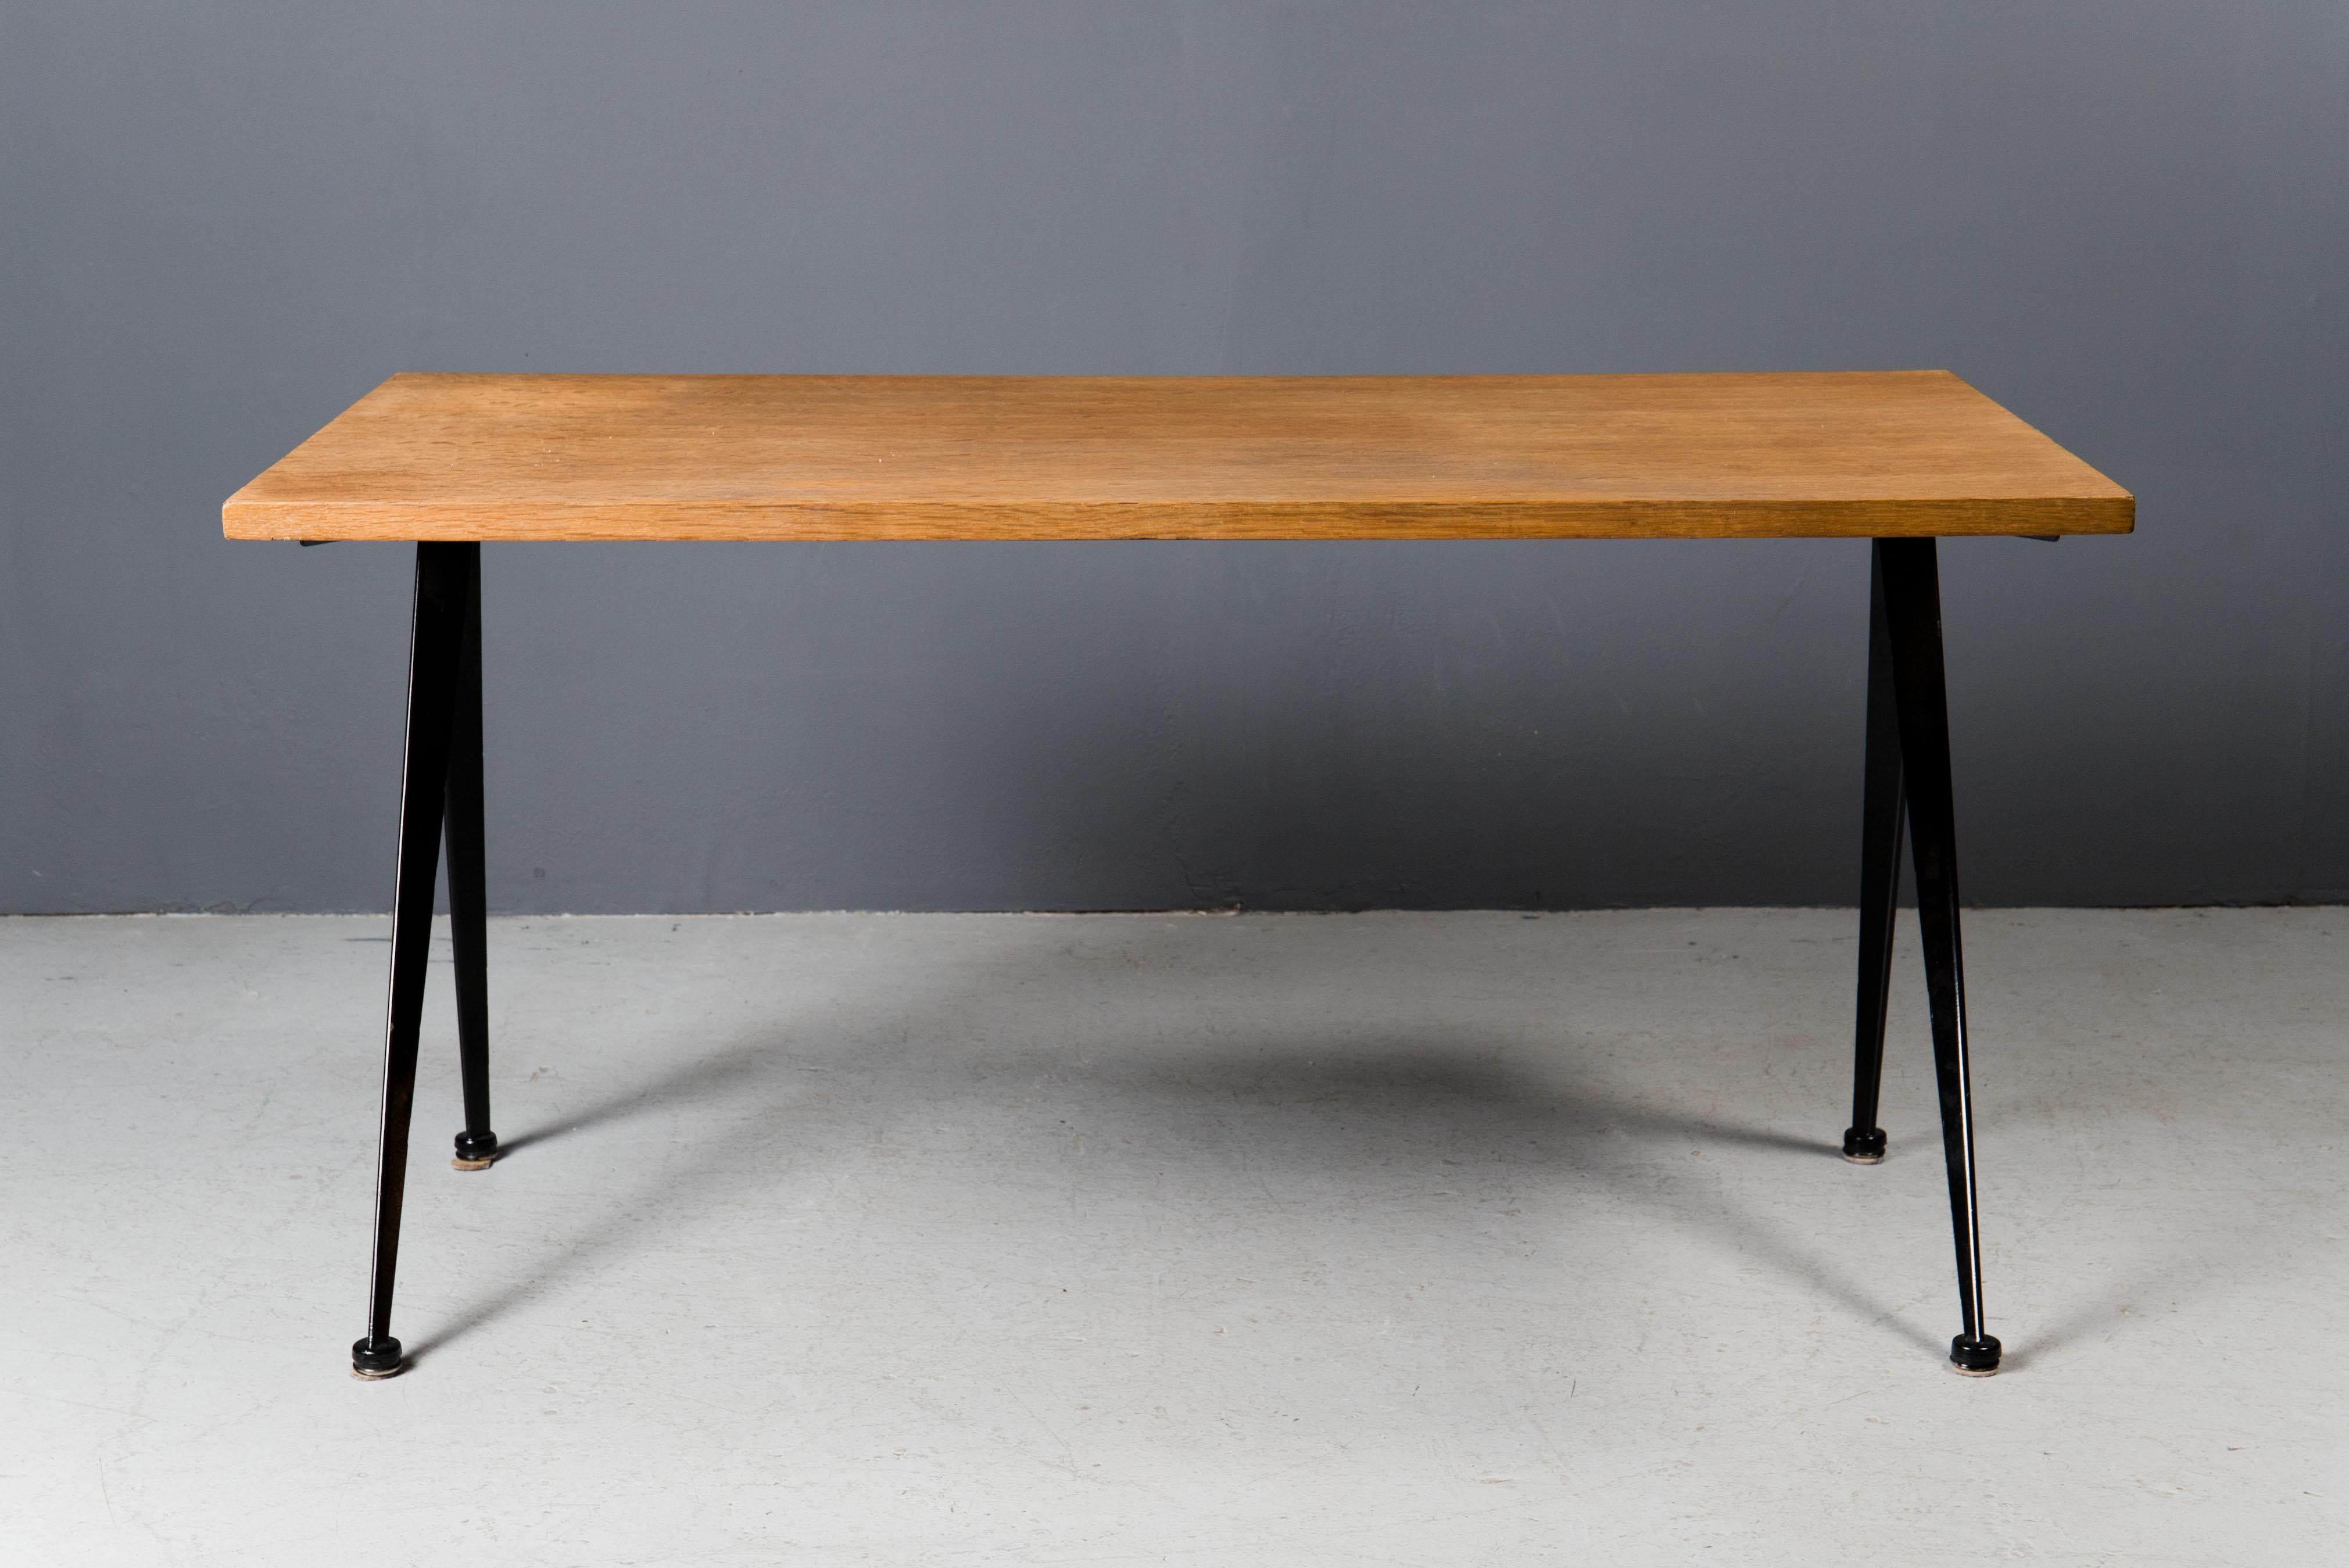 Elegant desk by Jean Prouvé in black color. Produced by Atelier Jean Prouvé in 1950s. Original Oak top.